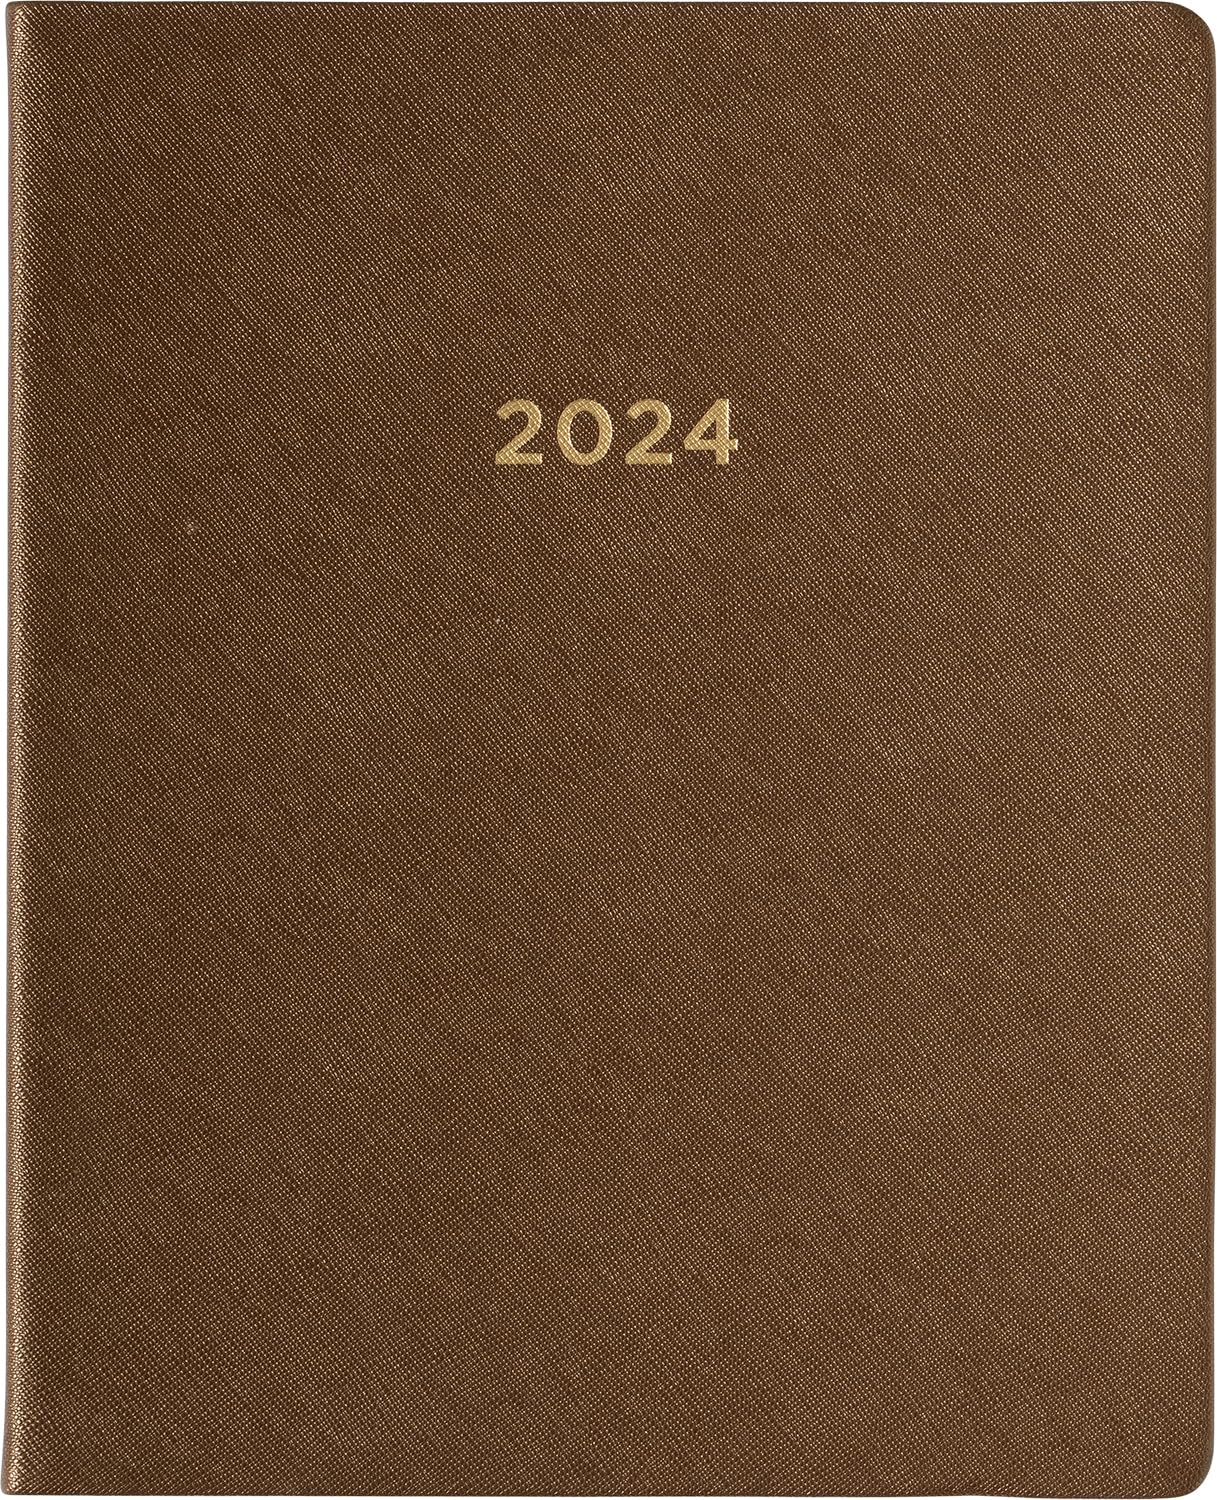 2024 Brown Shagreen Large Bound Planner